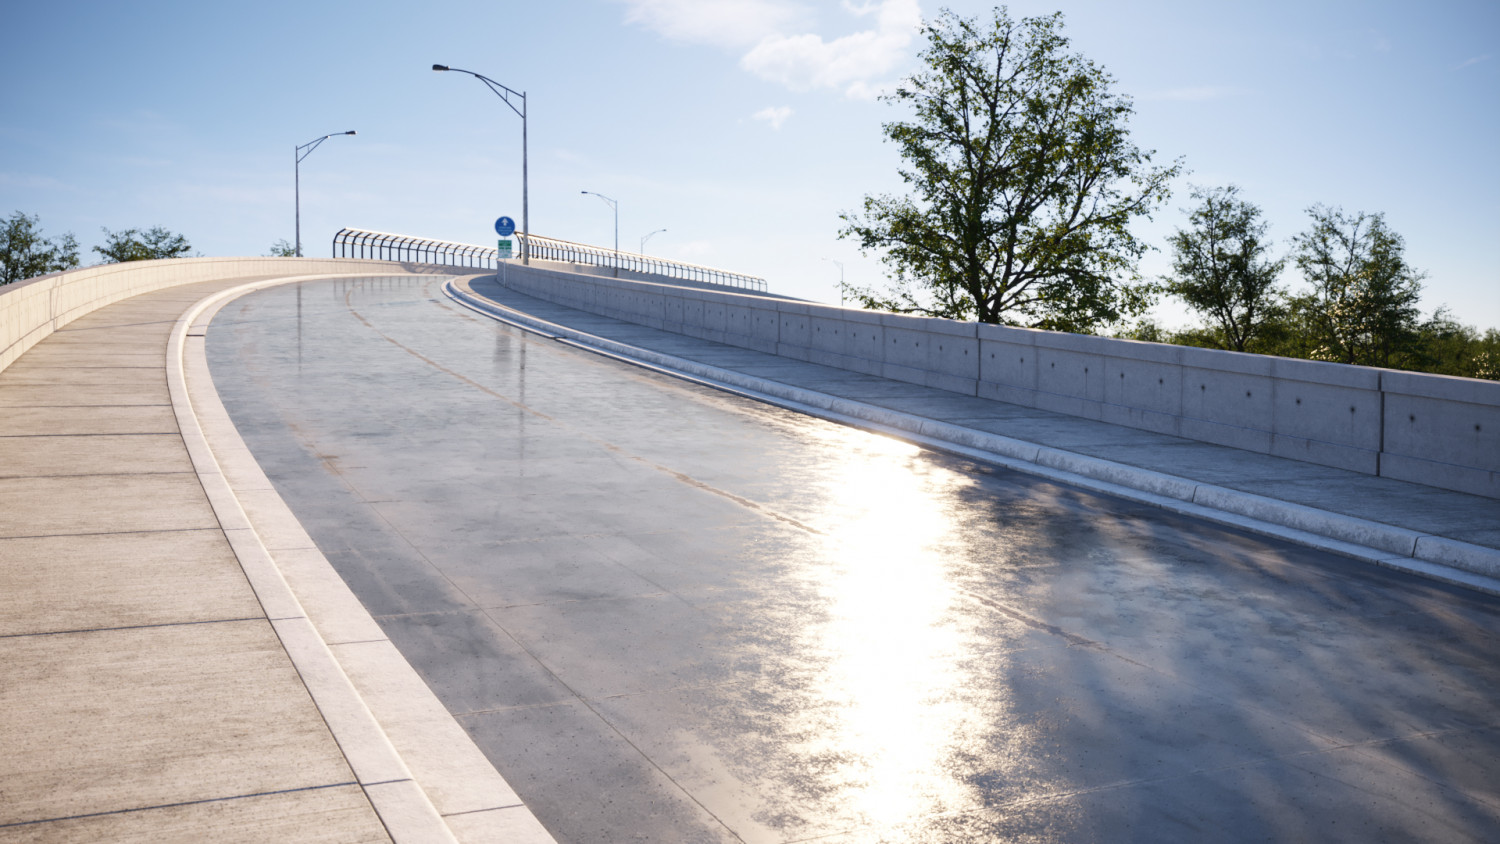 Wet concrete road texture